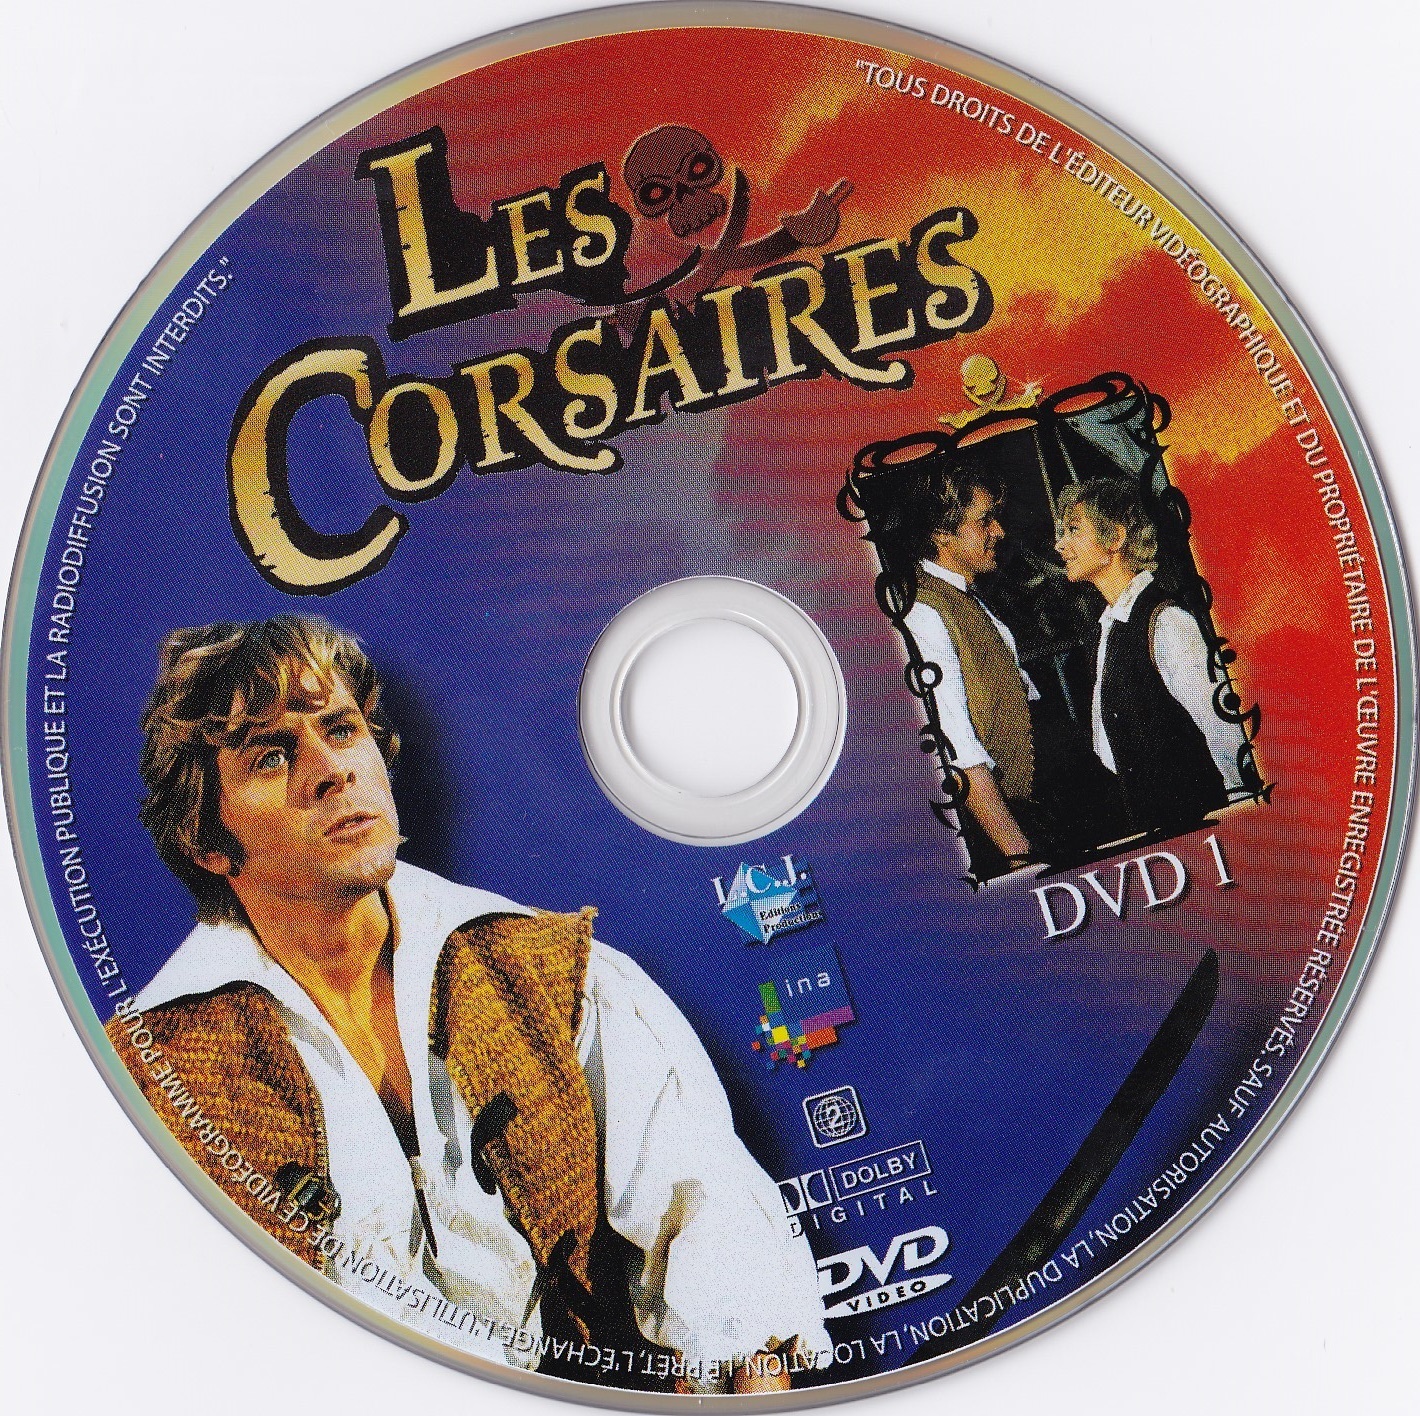 Les Corsaires DISC 1